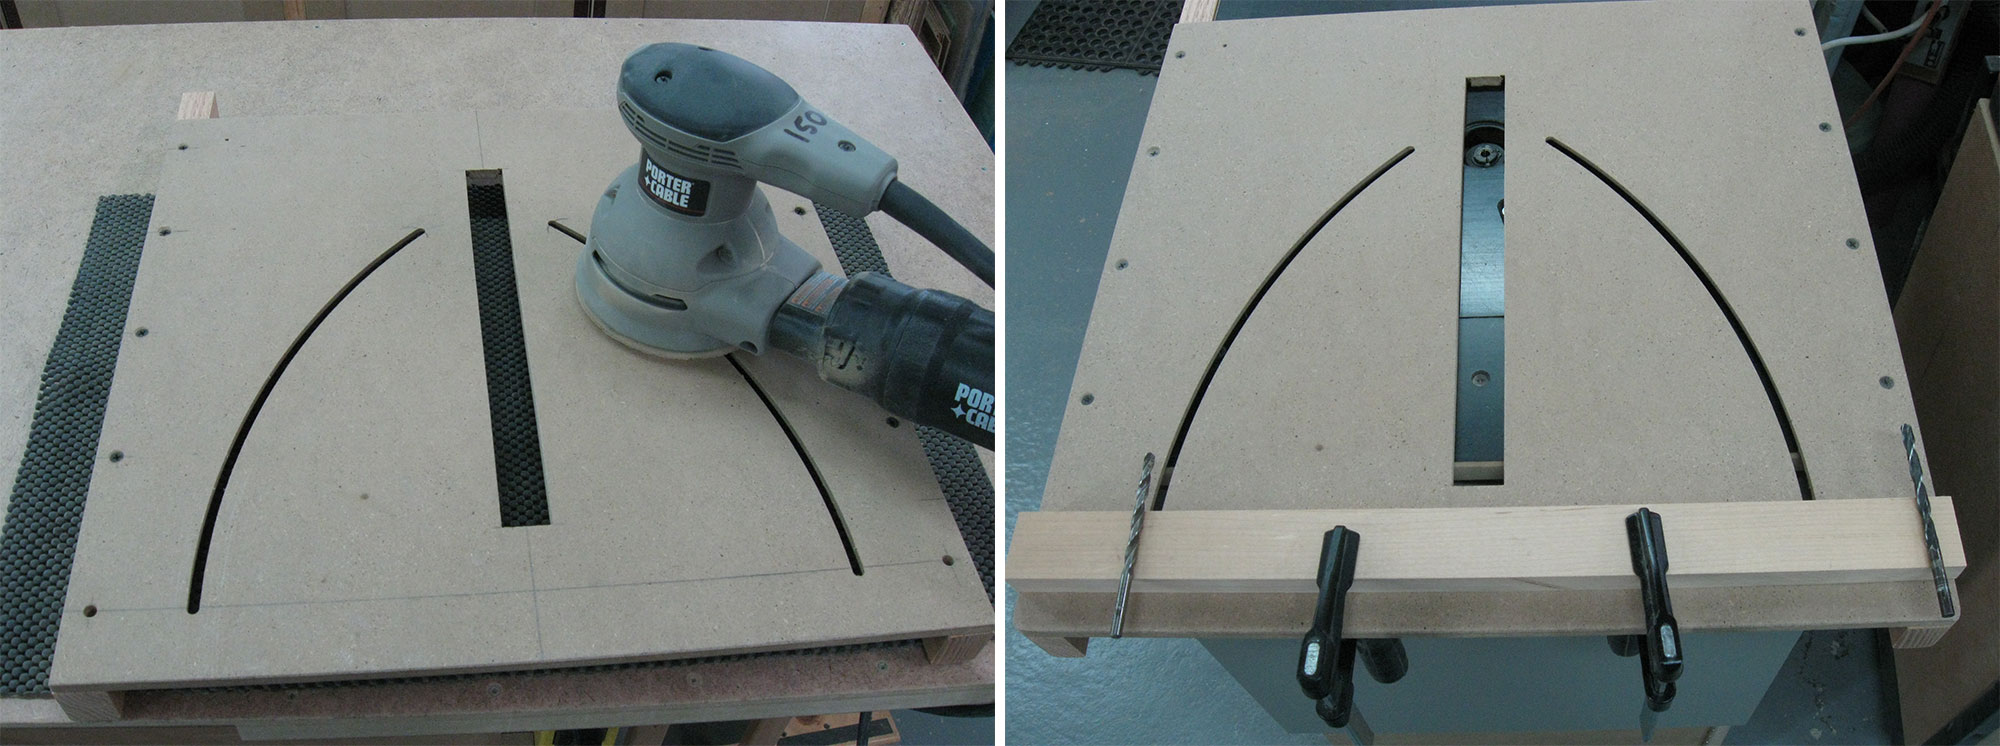 Image de gauche : Ponçage pour effacer les marques de traçage. Image de droite : Mise en place d'un guide en bois dur.